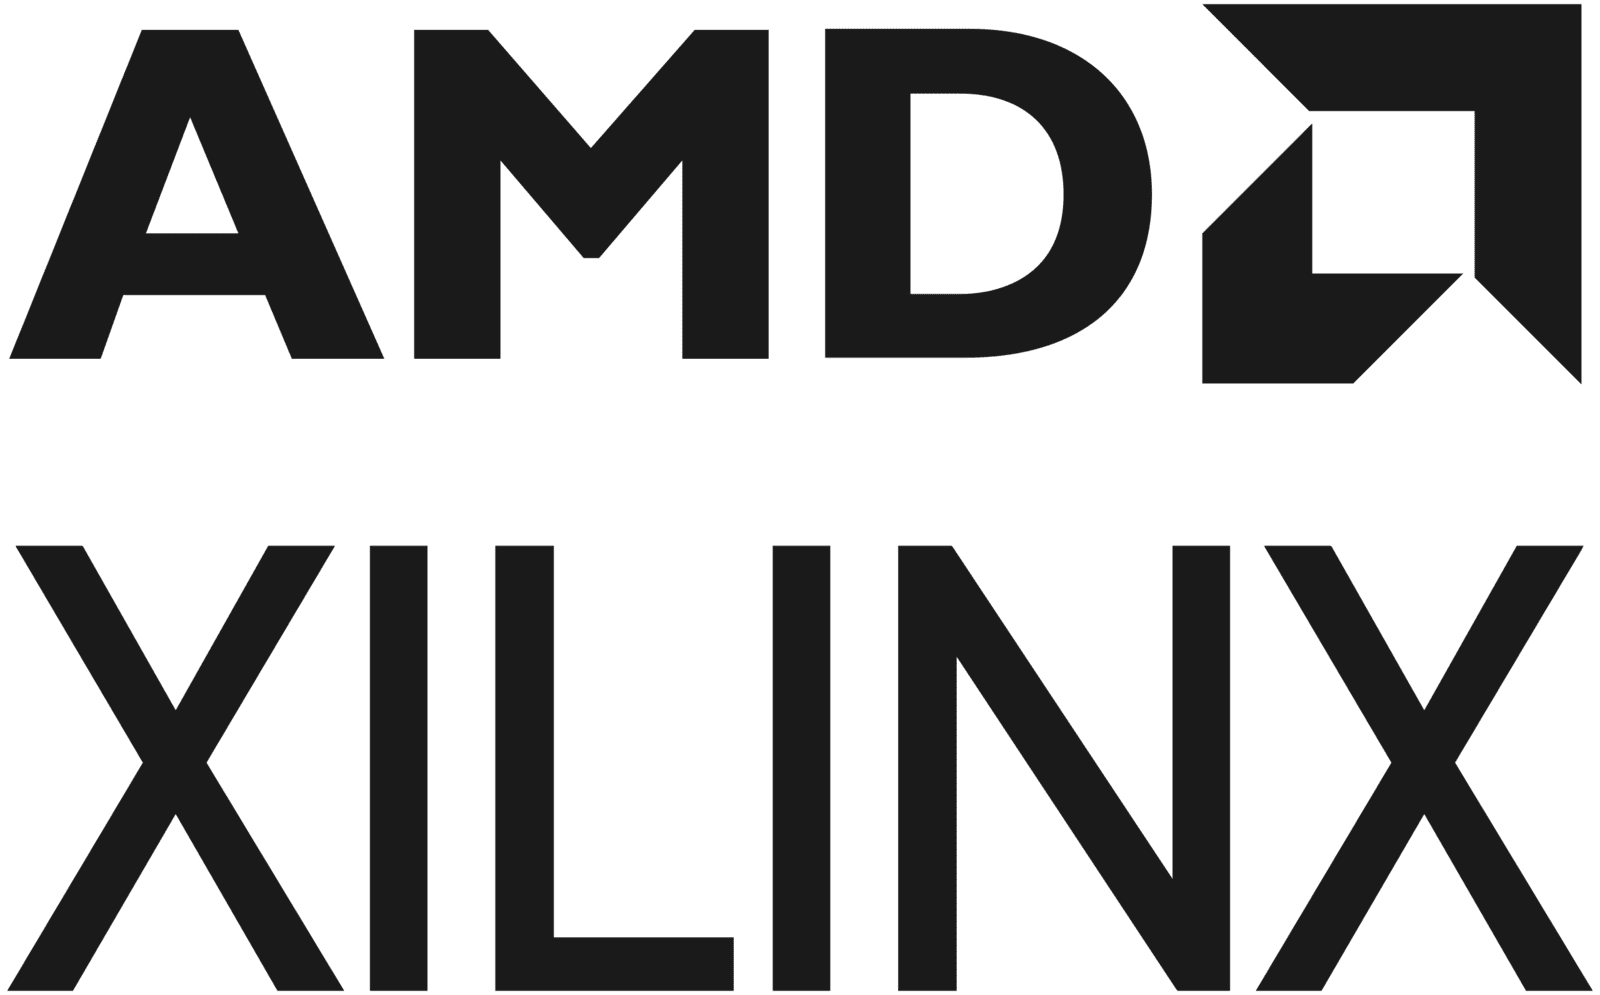 intoPIX technology partner Xilinx